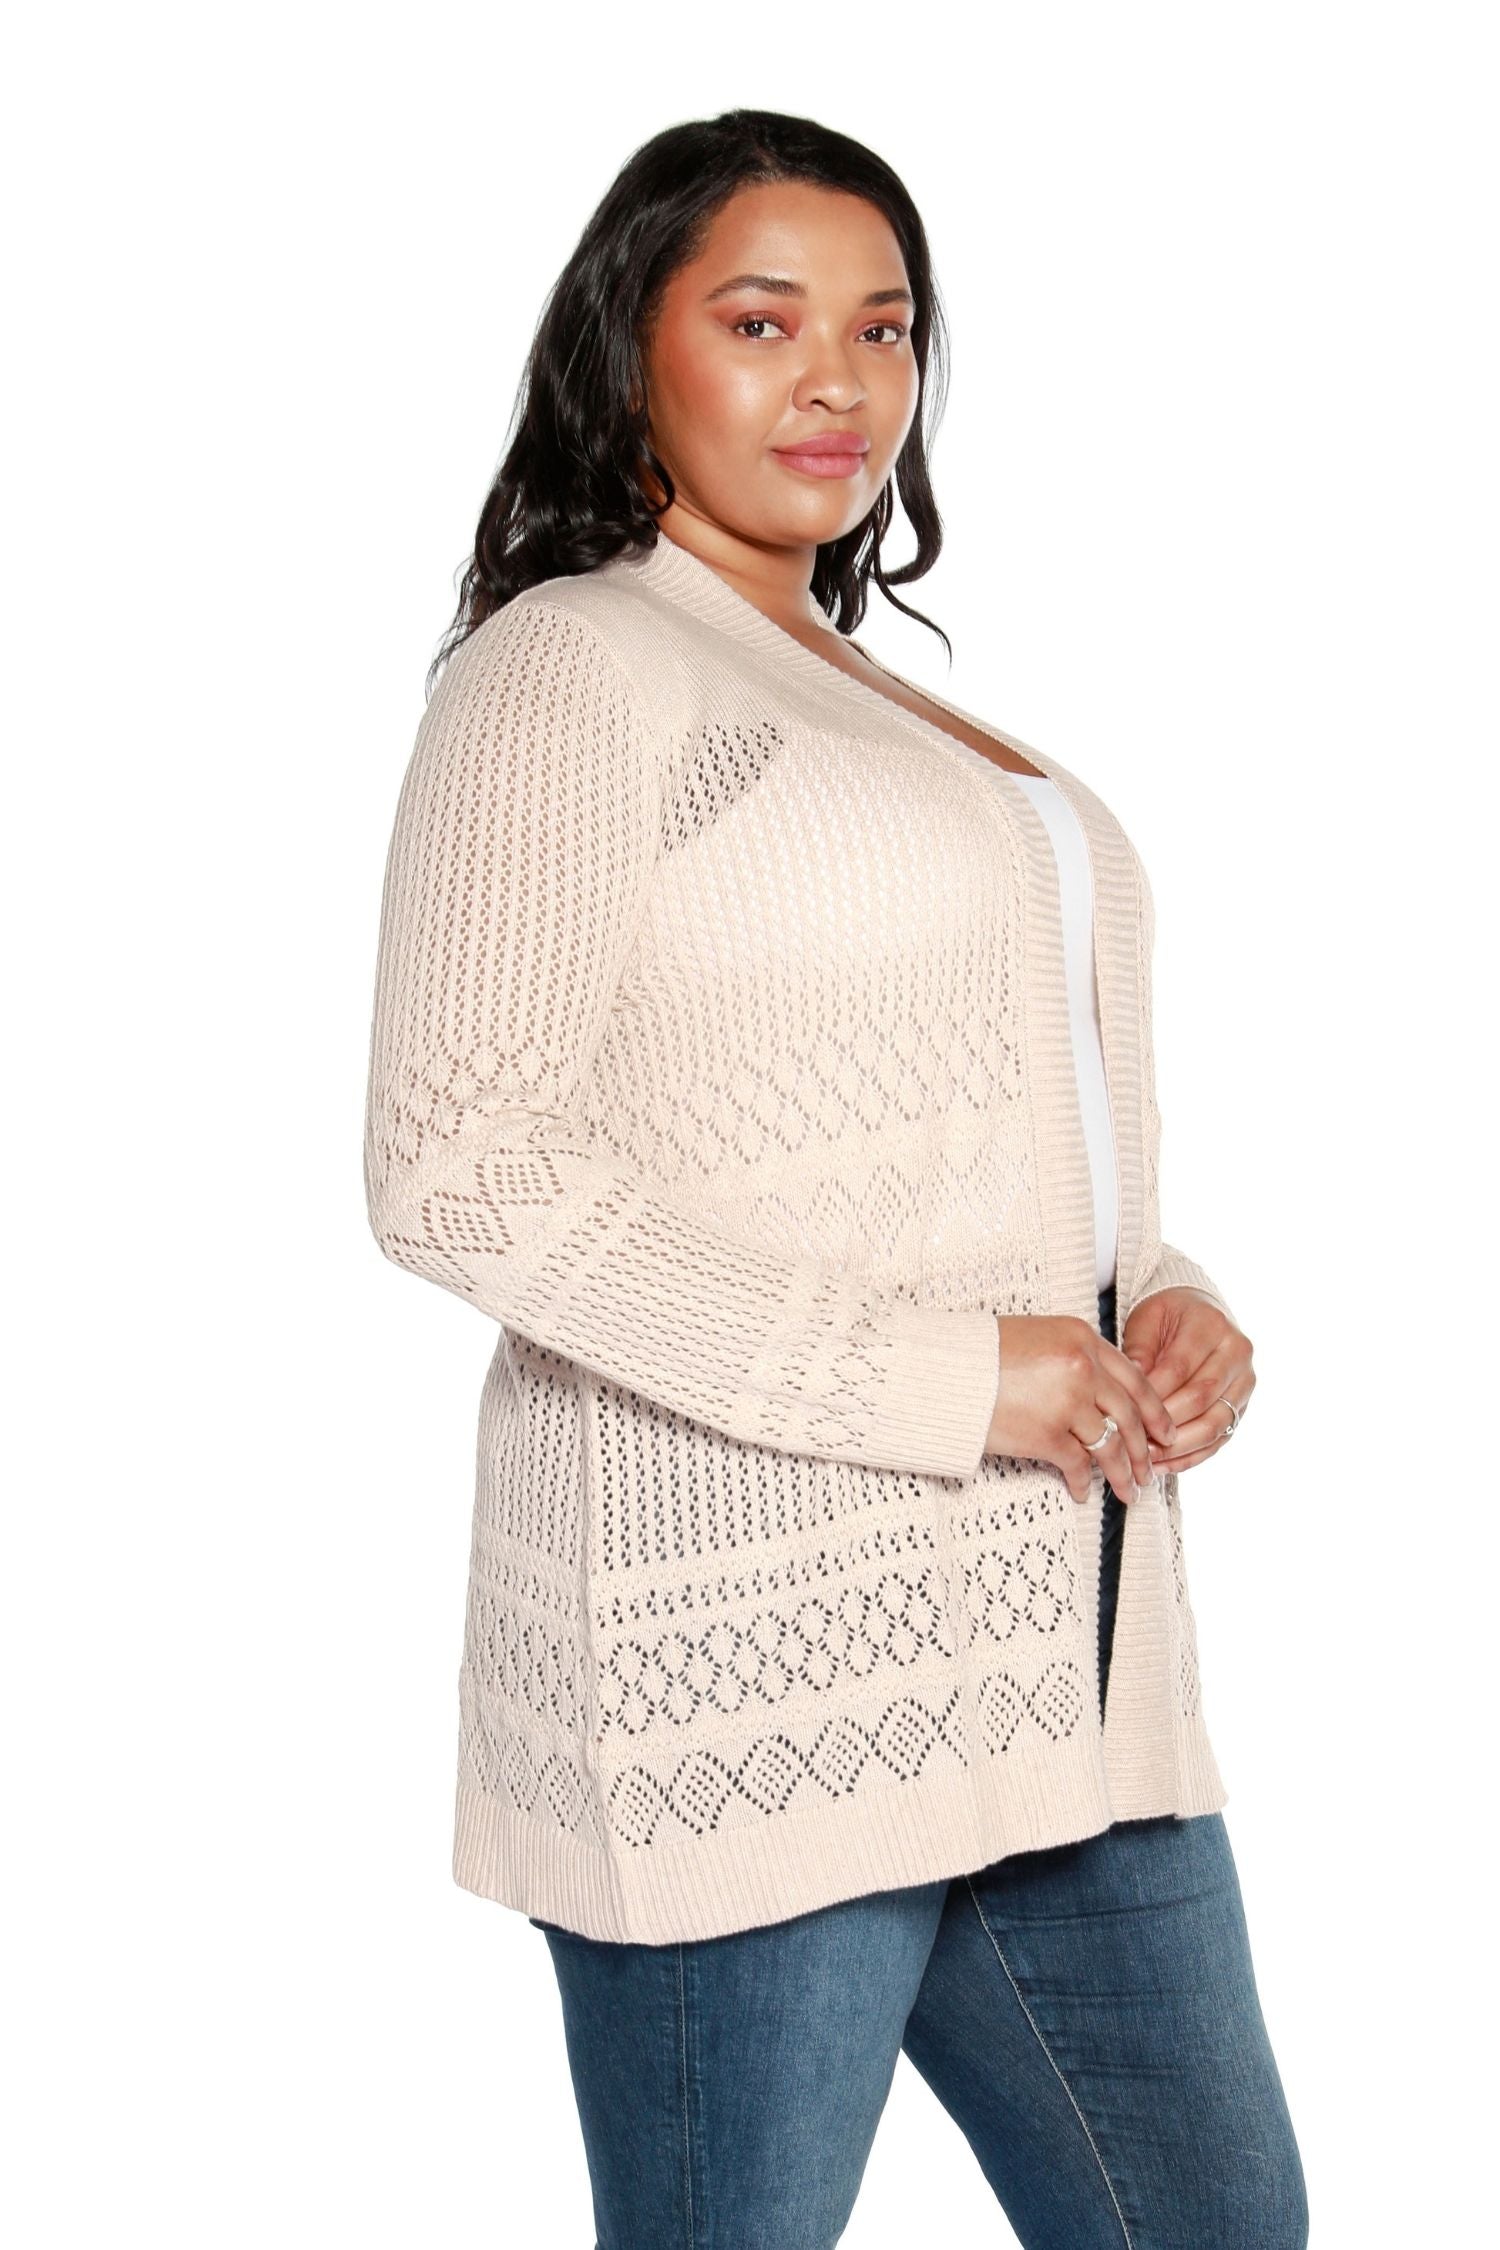 Cárdigan largo de crochet para mujer, suéter abierto a media cadera con mangas largas | con curvas